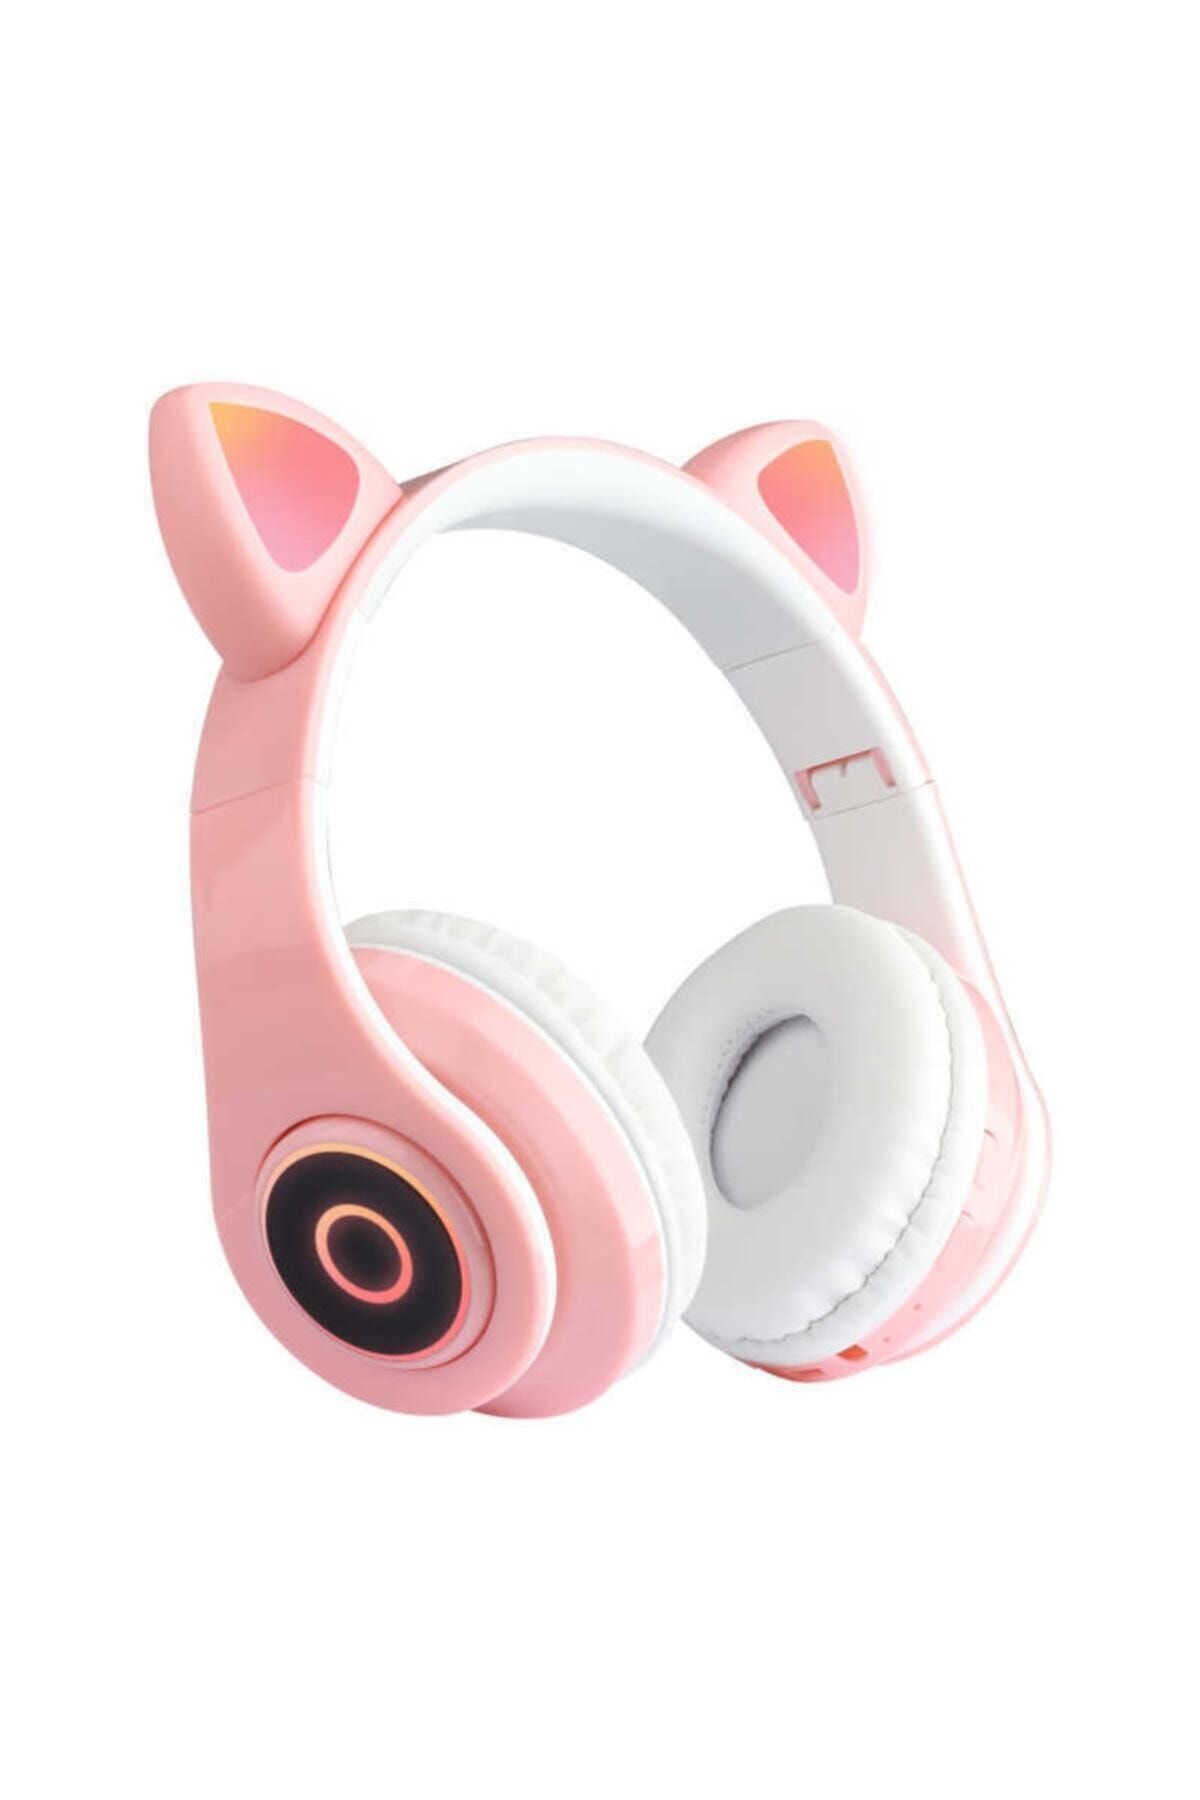 teknosepetim Rgb Led Işıklı Kedili Kulaklık Bluetooth 5.0 Kedi Kulaklık Wireless Kulaküstü Mikrofonlu Cat Kadın